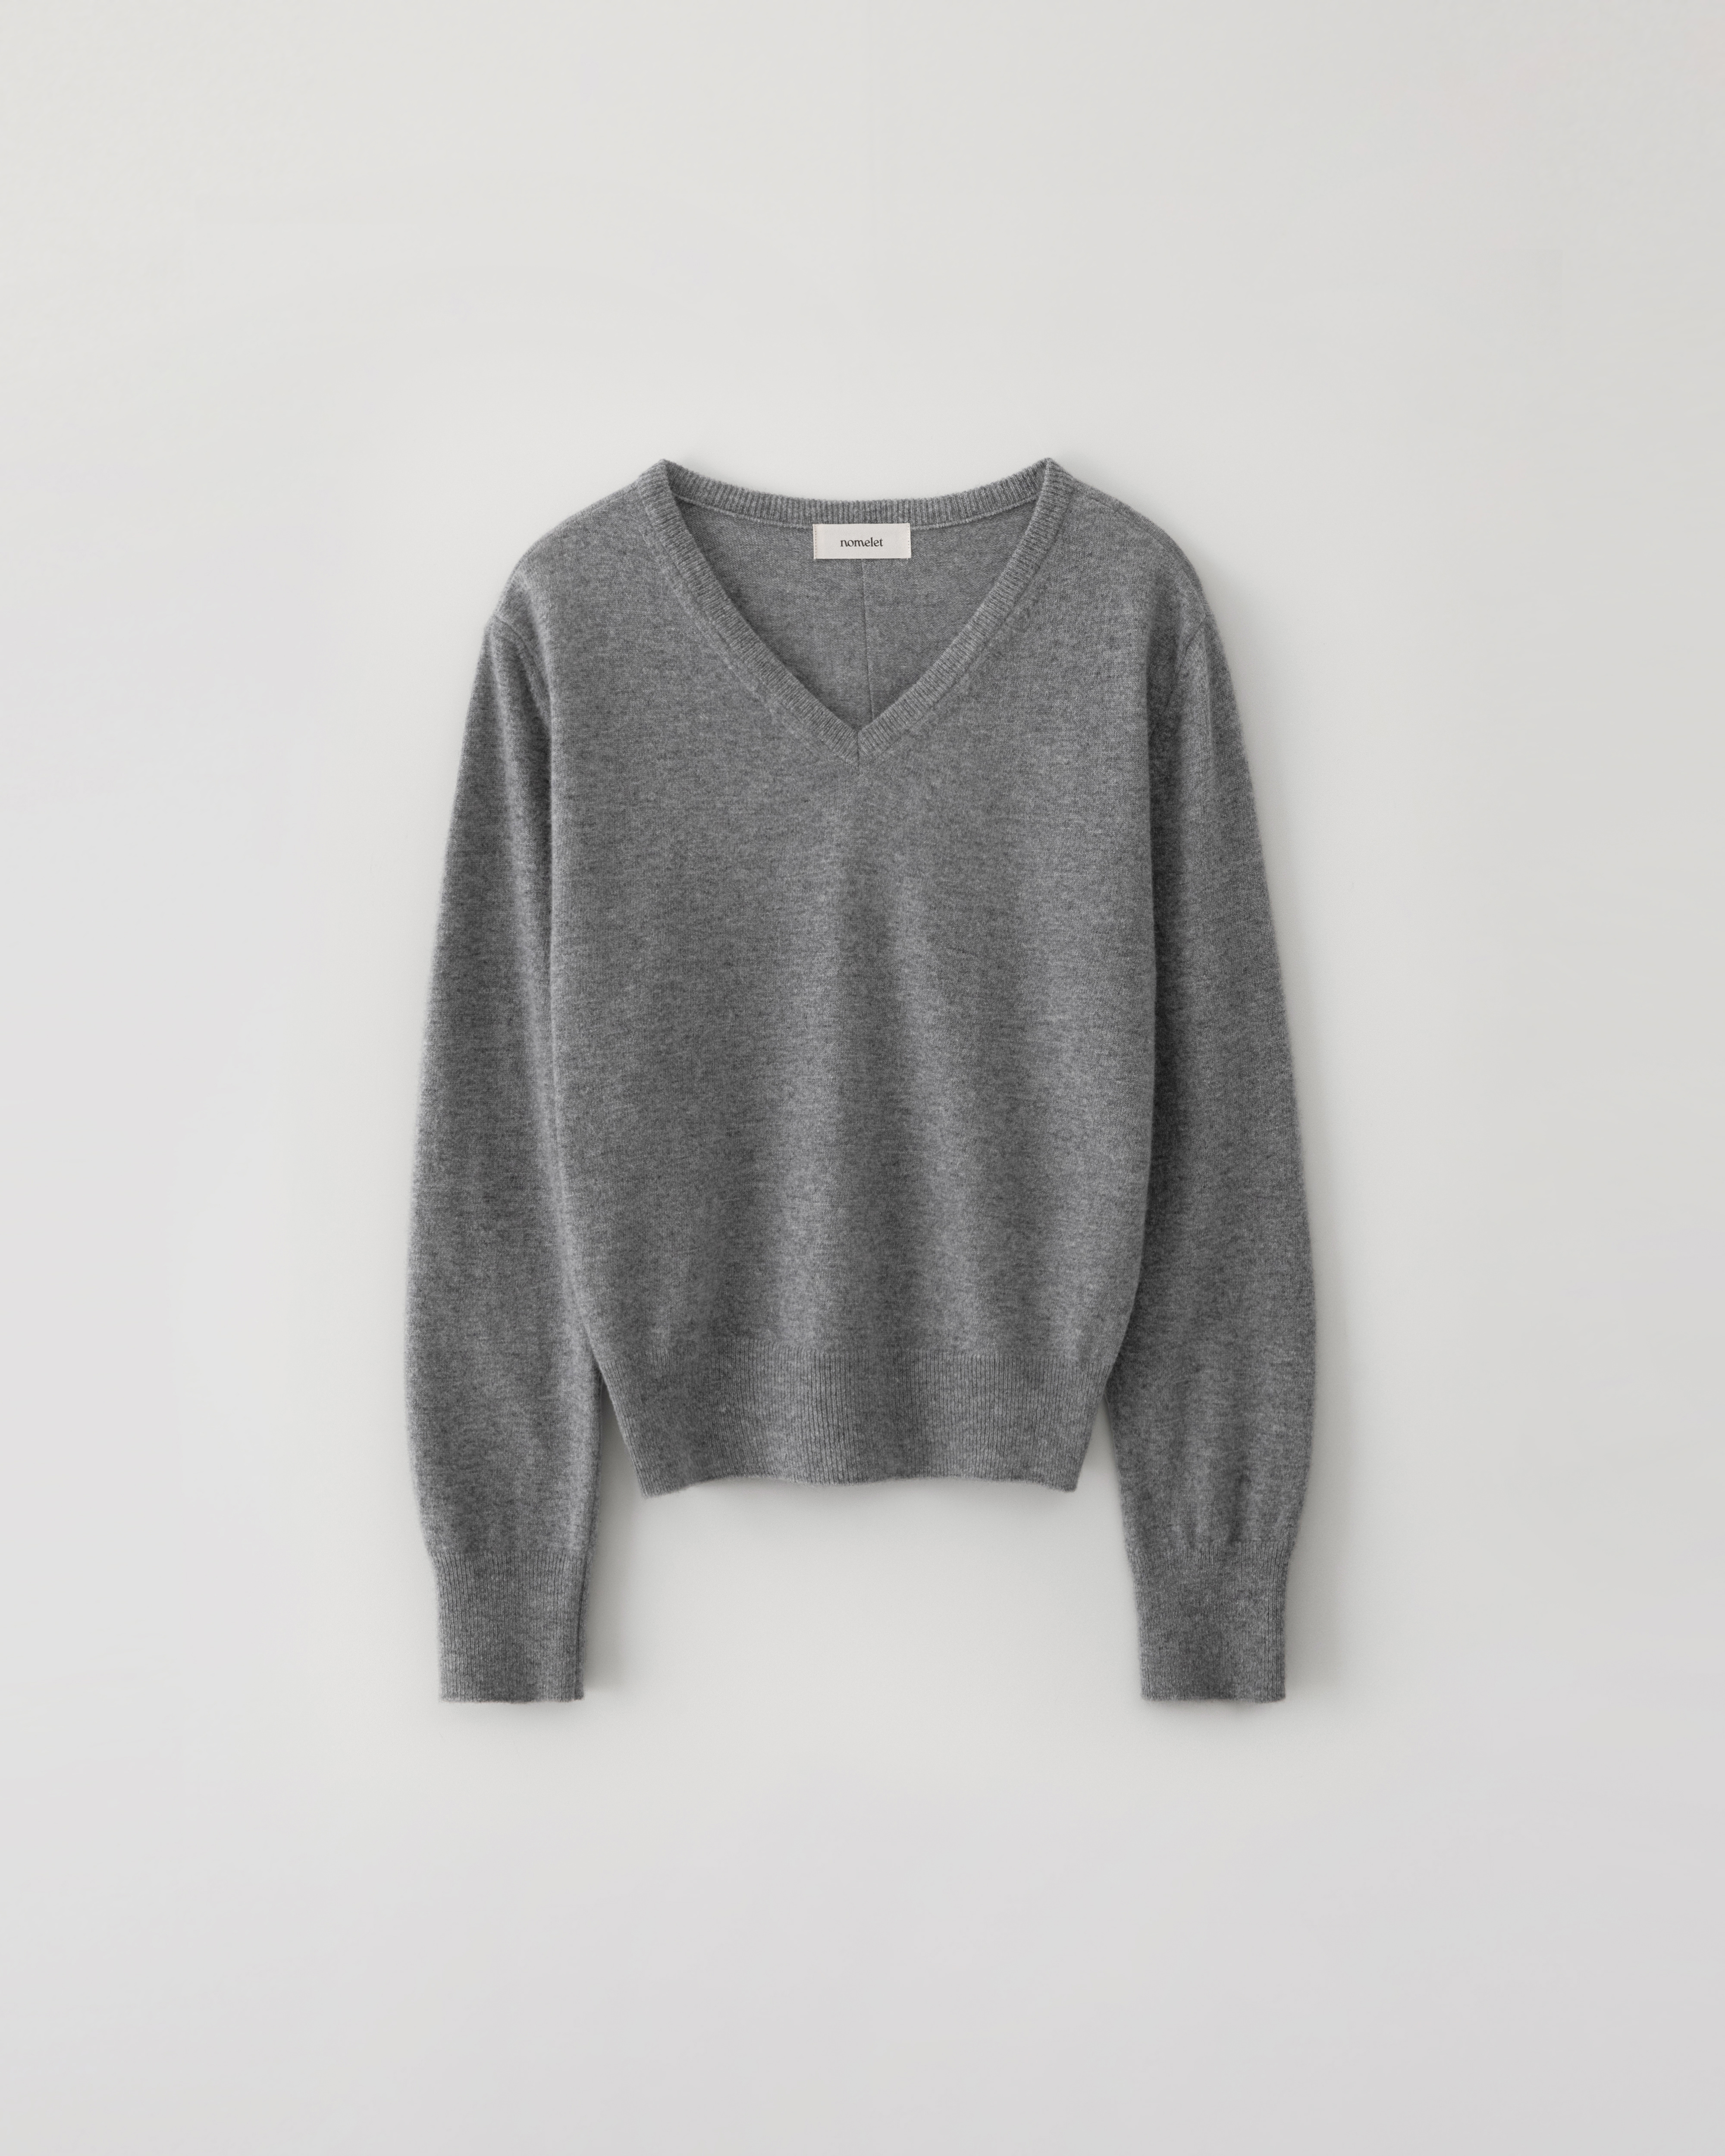 Millie v-neck knit - melange gray